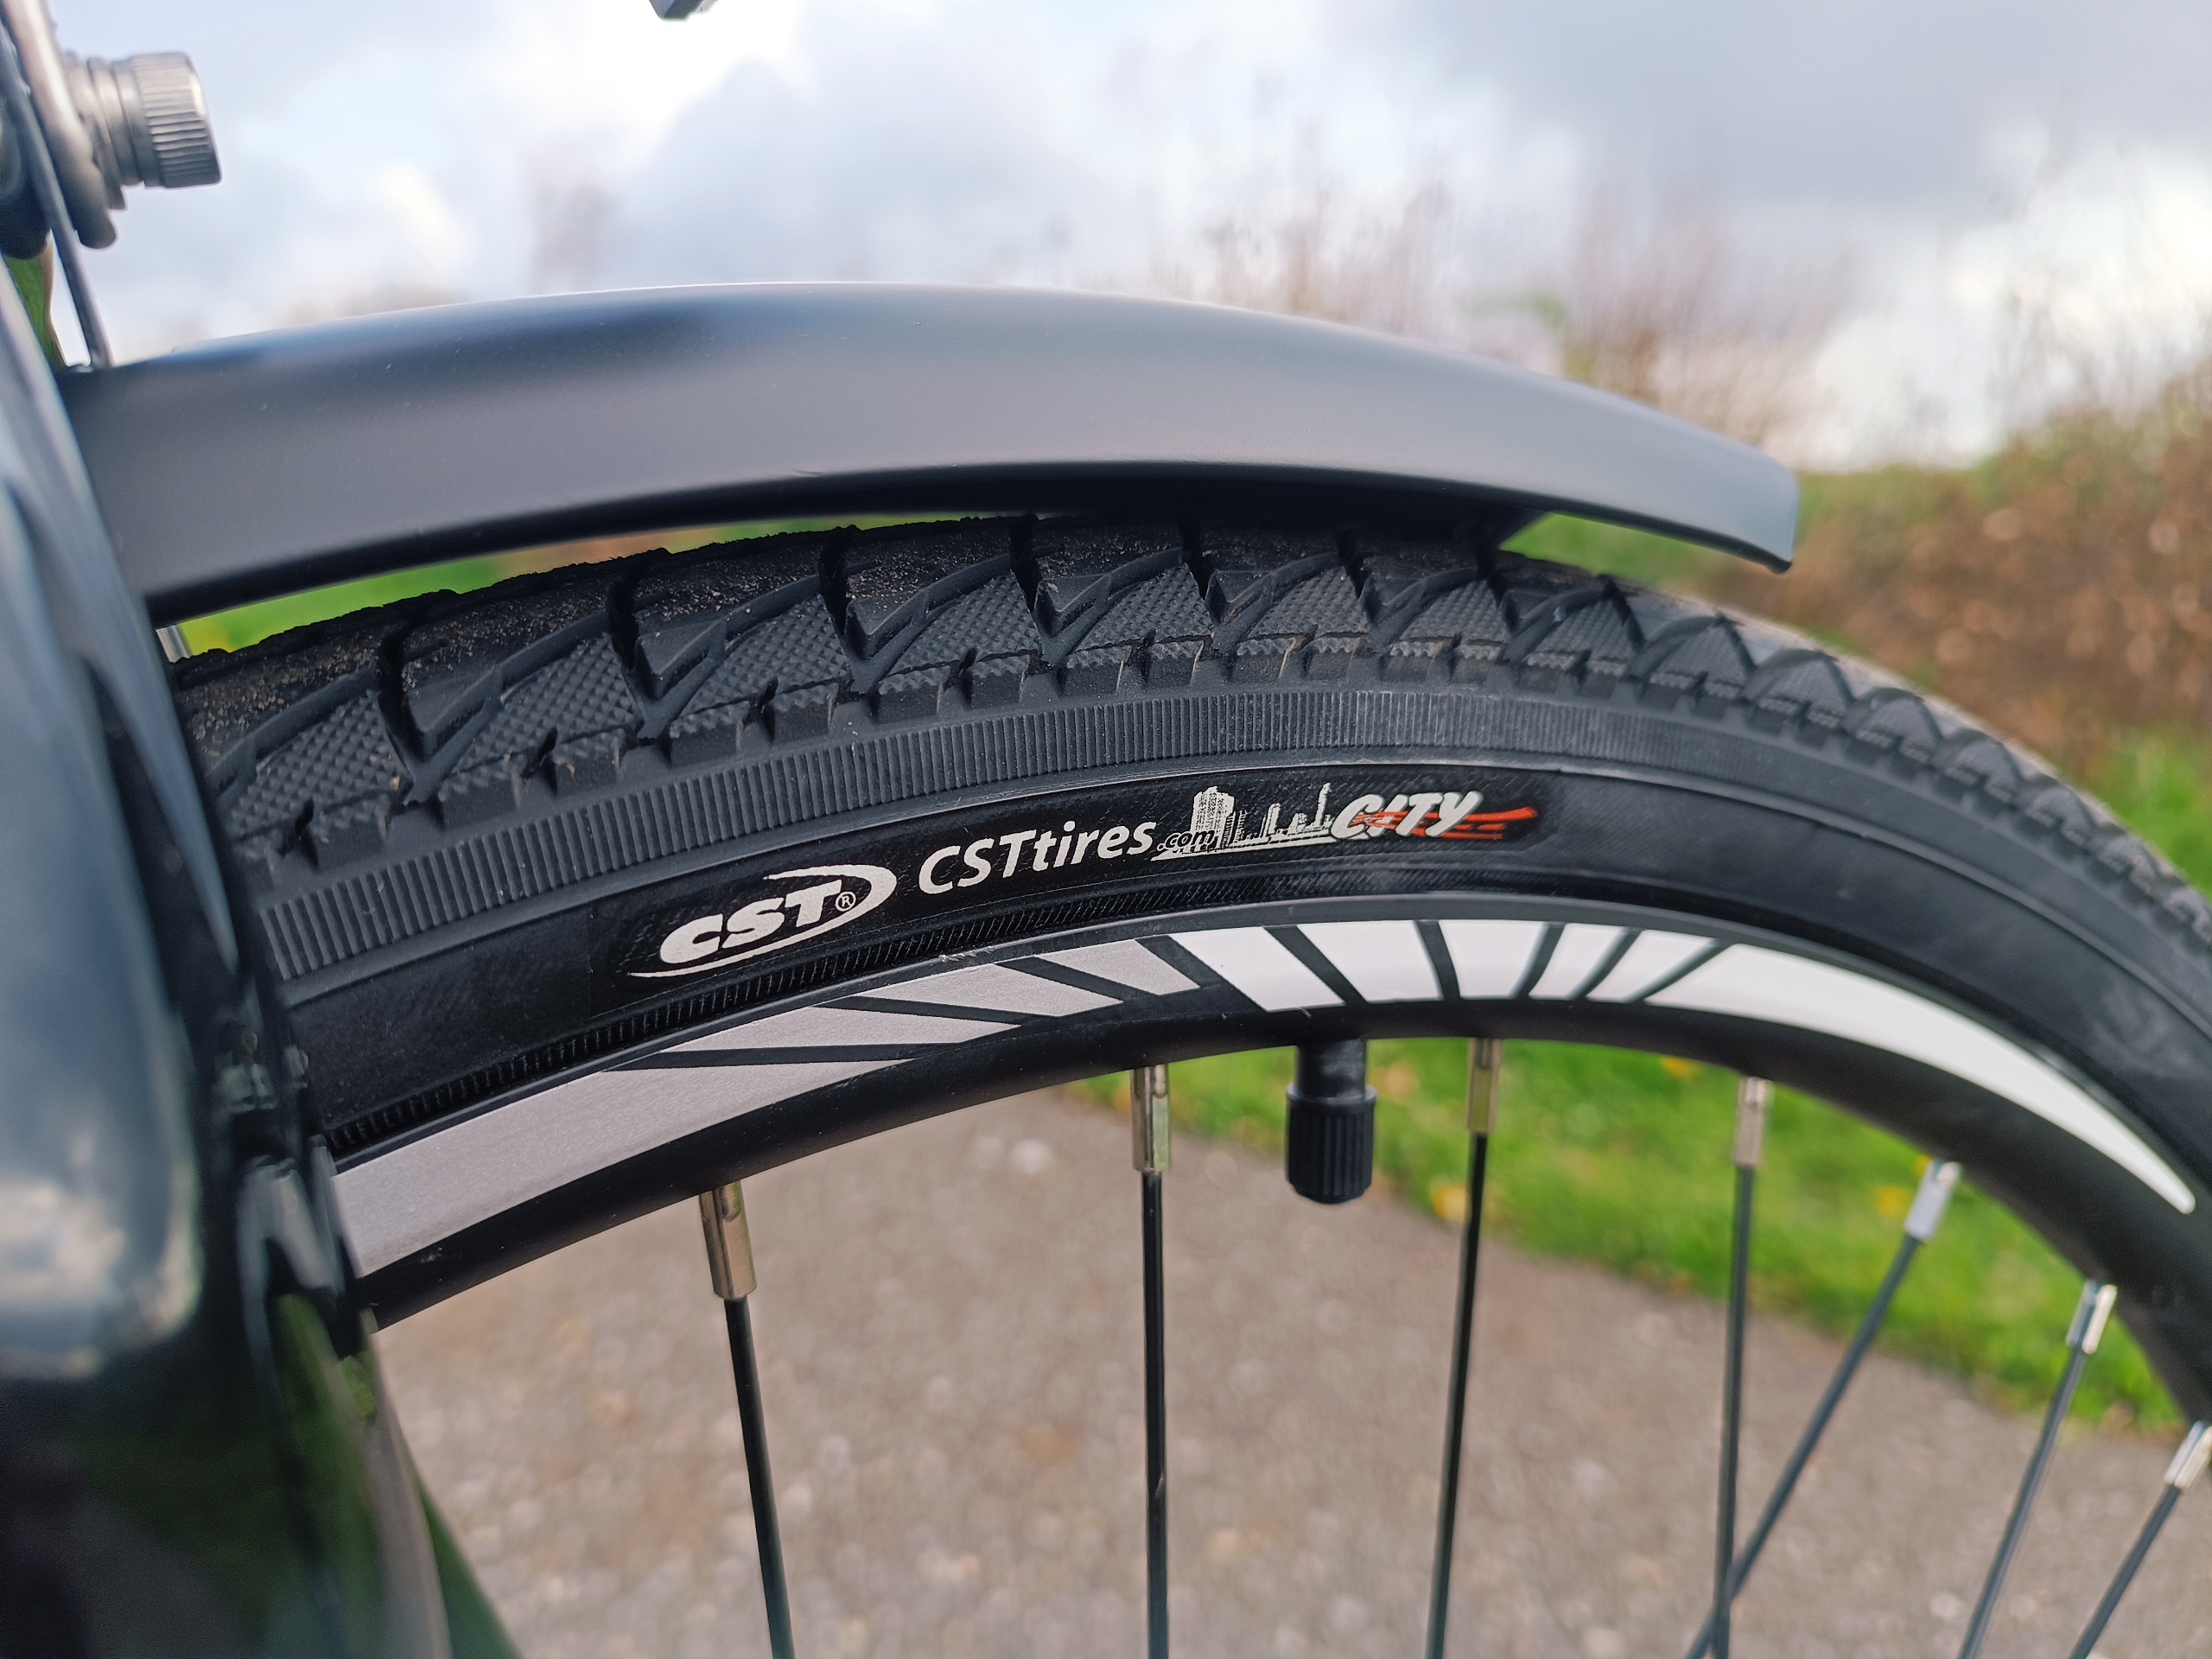 Die verbauten CST City Reifen gelten als pannensicher und besonders griffig | Quelle: ebiketester24.de